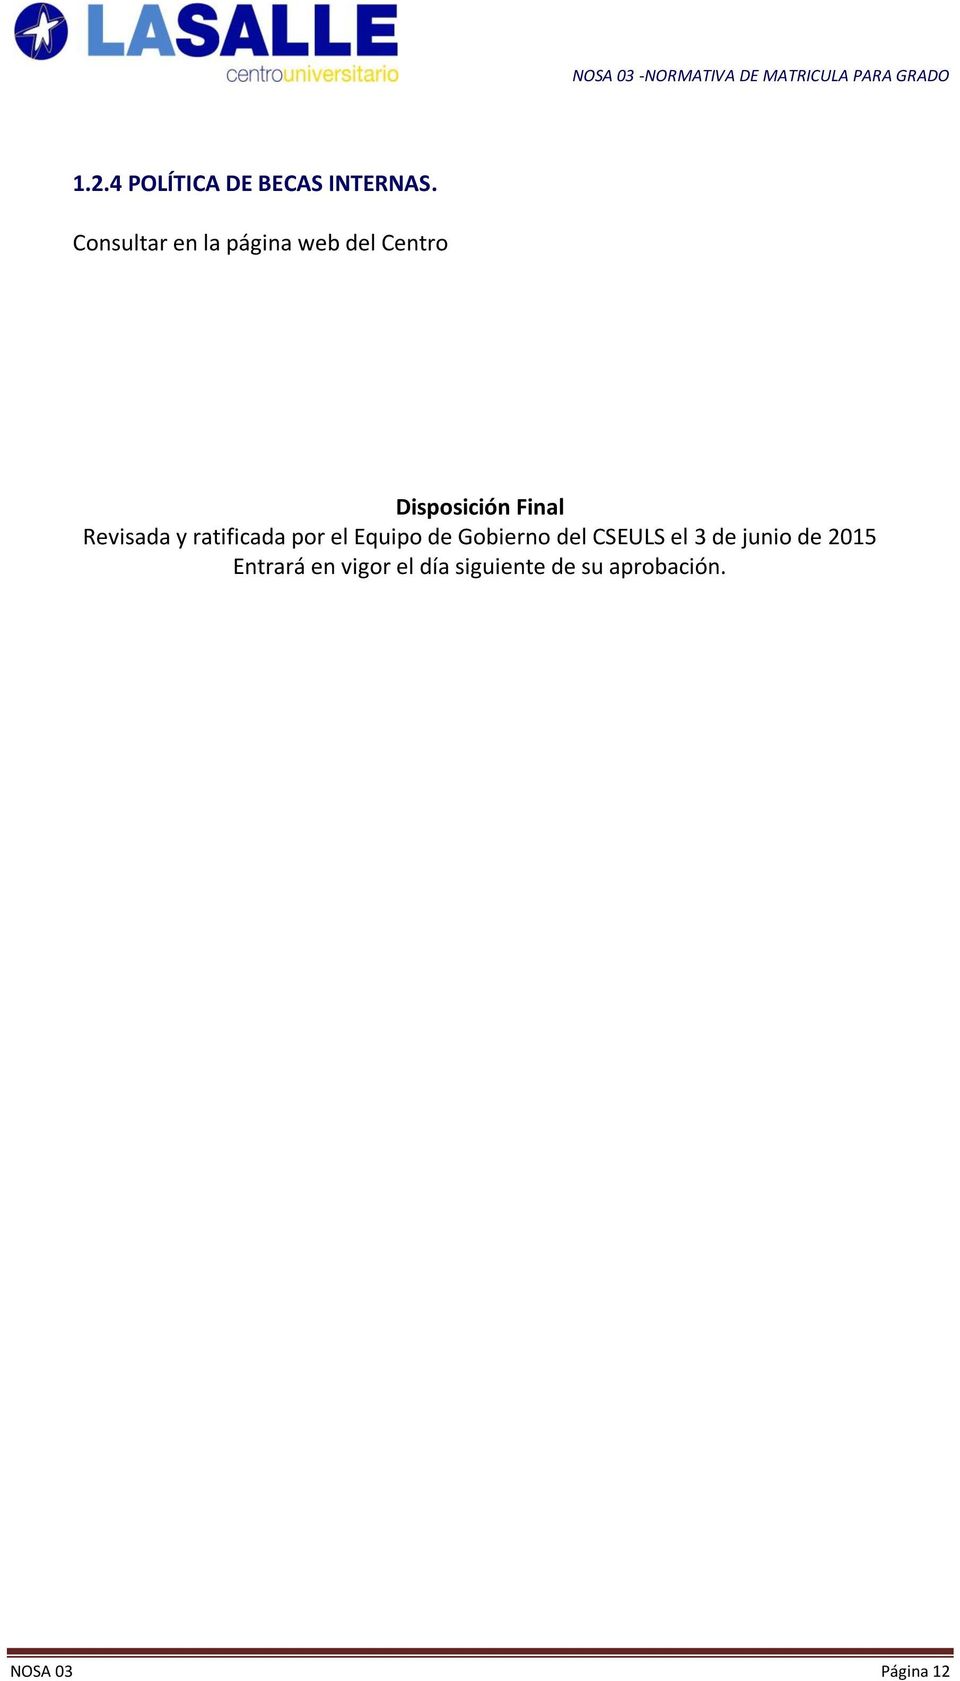 Revisada y ratificada por el Equipo de Gobierno del CSEULS